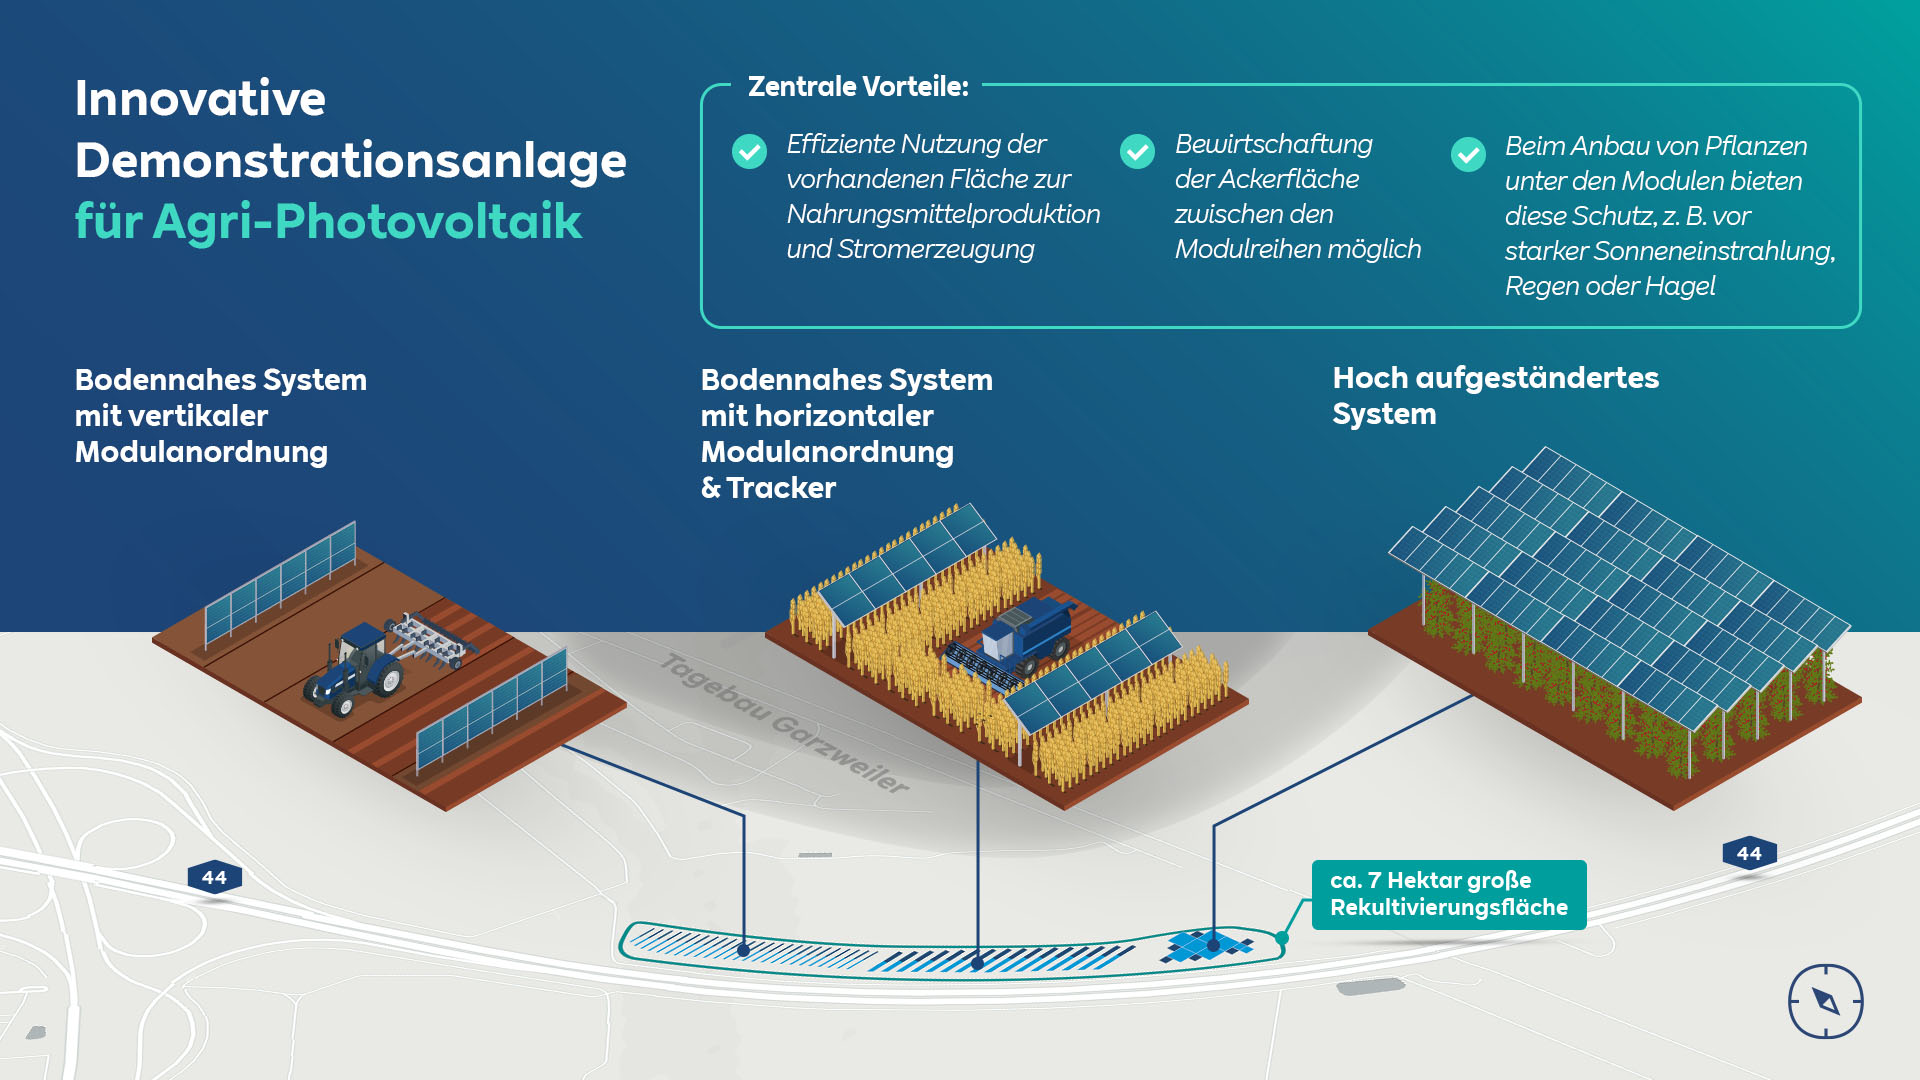 Neue Chance für Energiewende und Landwirtschaft: RWE plant innovative Demonstrationsanlage für Agri-Photovoltaik